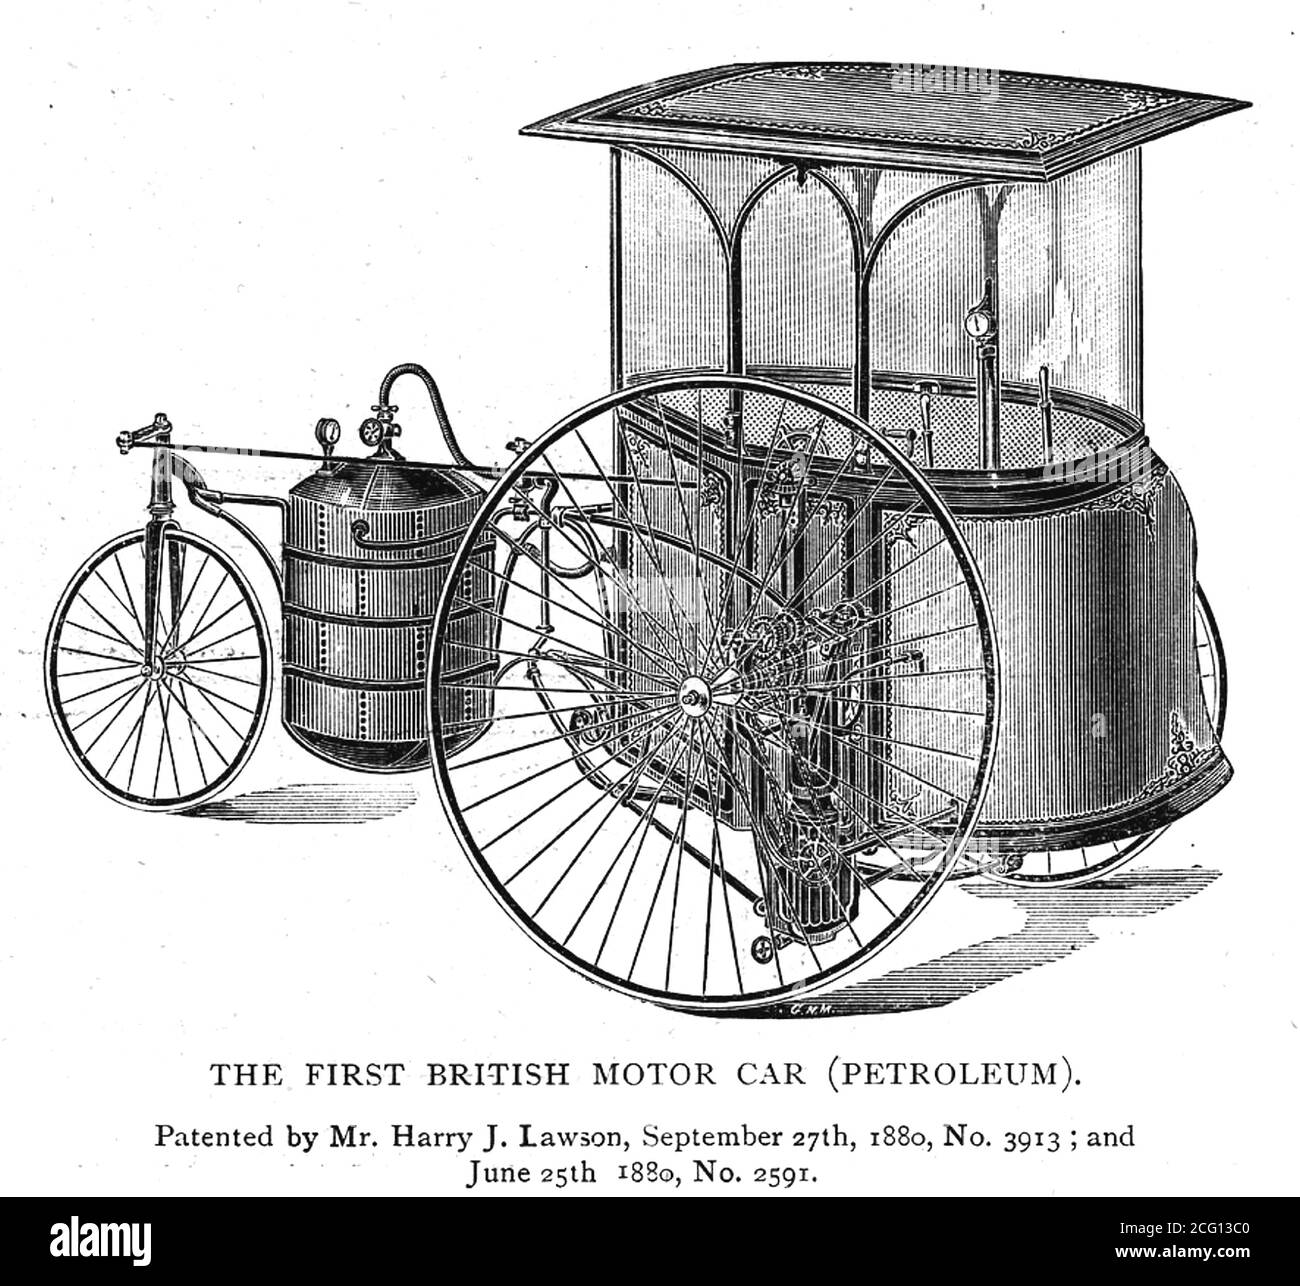 HENRY (alias Harry) JOHN LAWSON (1852-1925) ingegnere inglese e pioniere designer di biciclette e questo design brevettato per la prima automobile a benzina britannica. Era anche un truffatore condannato. Foto Stock